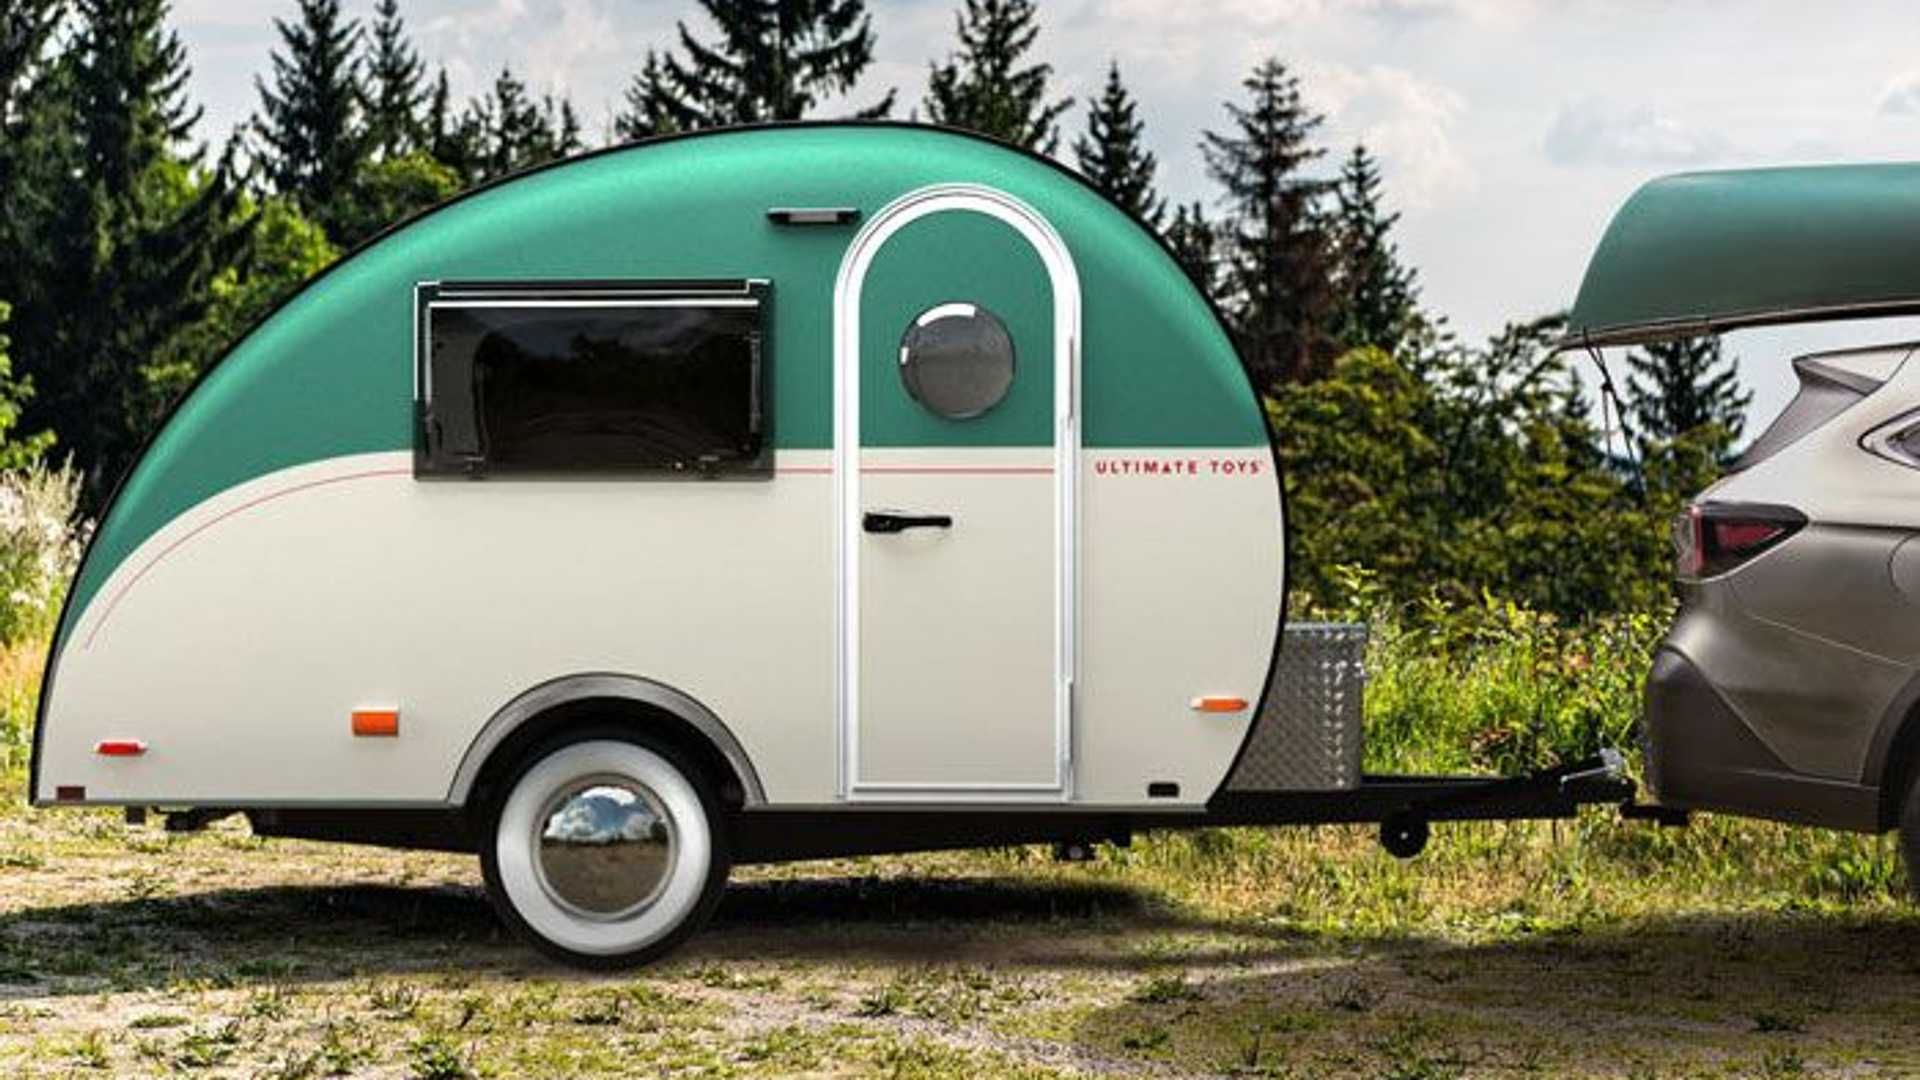 Caravana Camper 30 Cm Con Figura Artículada Y Accesorios ¡tiene